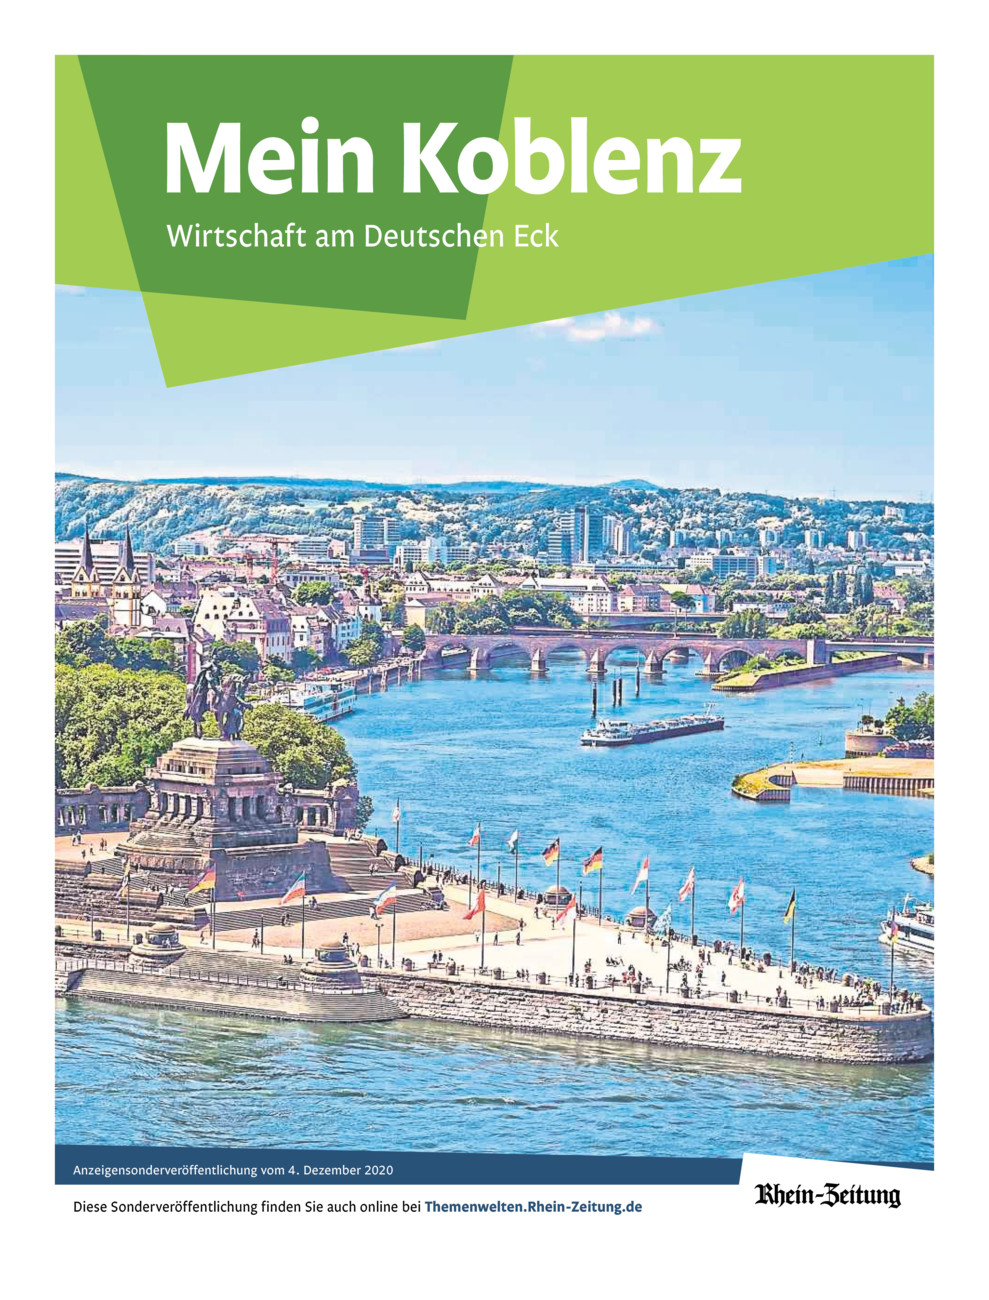 Mein Koblenz